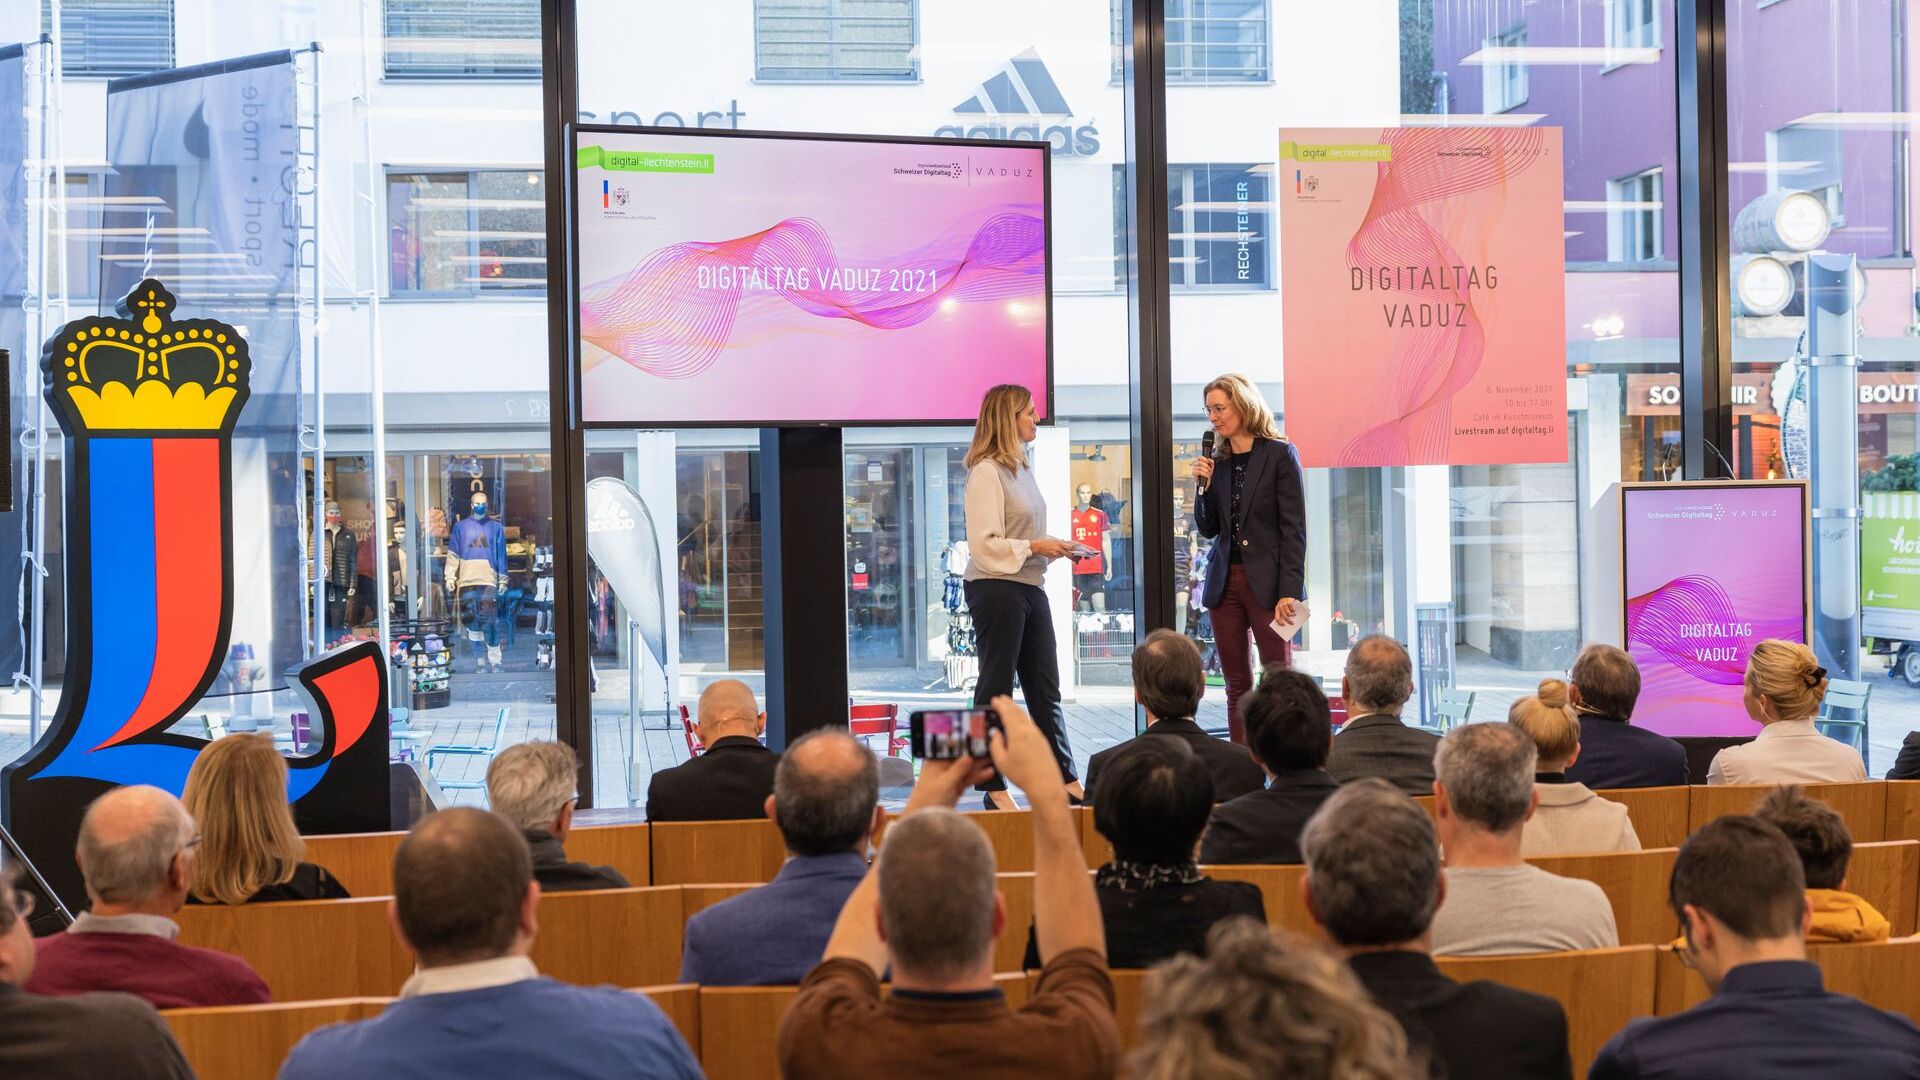 „Дигиталтаг Вадуз“, који је Музеј уметности главног града Кнежевине Лихтенштајн дочекао у суботу 6. новембра 2021, изазвао је ентузијазам јавности и говорника у аналогији са „Швајцарским дигиталним даном“ следећег 10.: интервенција заменице премијера Моунани Сабине